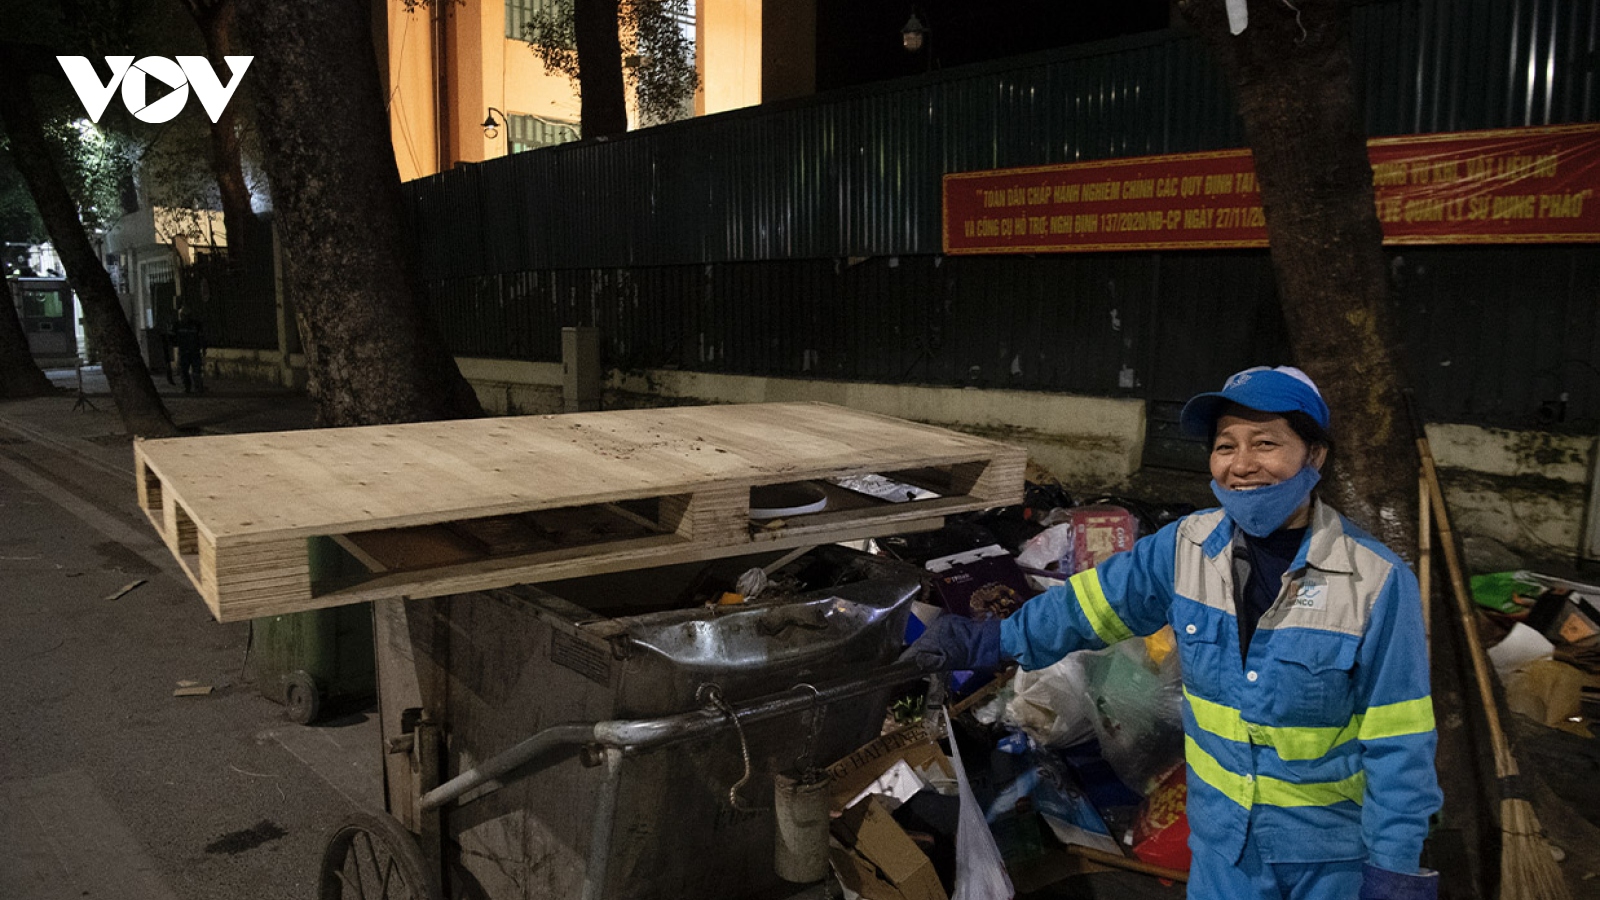 Tâm sự của nữ công nhân vệ sinh môi trường 29 năm đón giao thừa ngoài đường